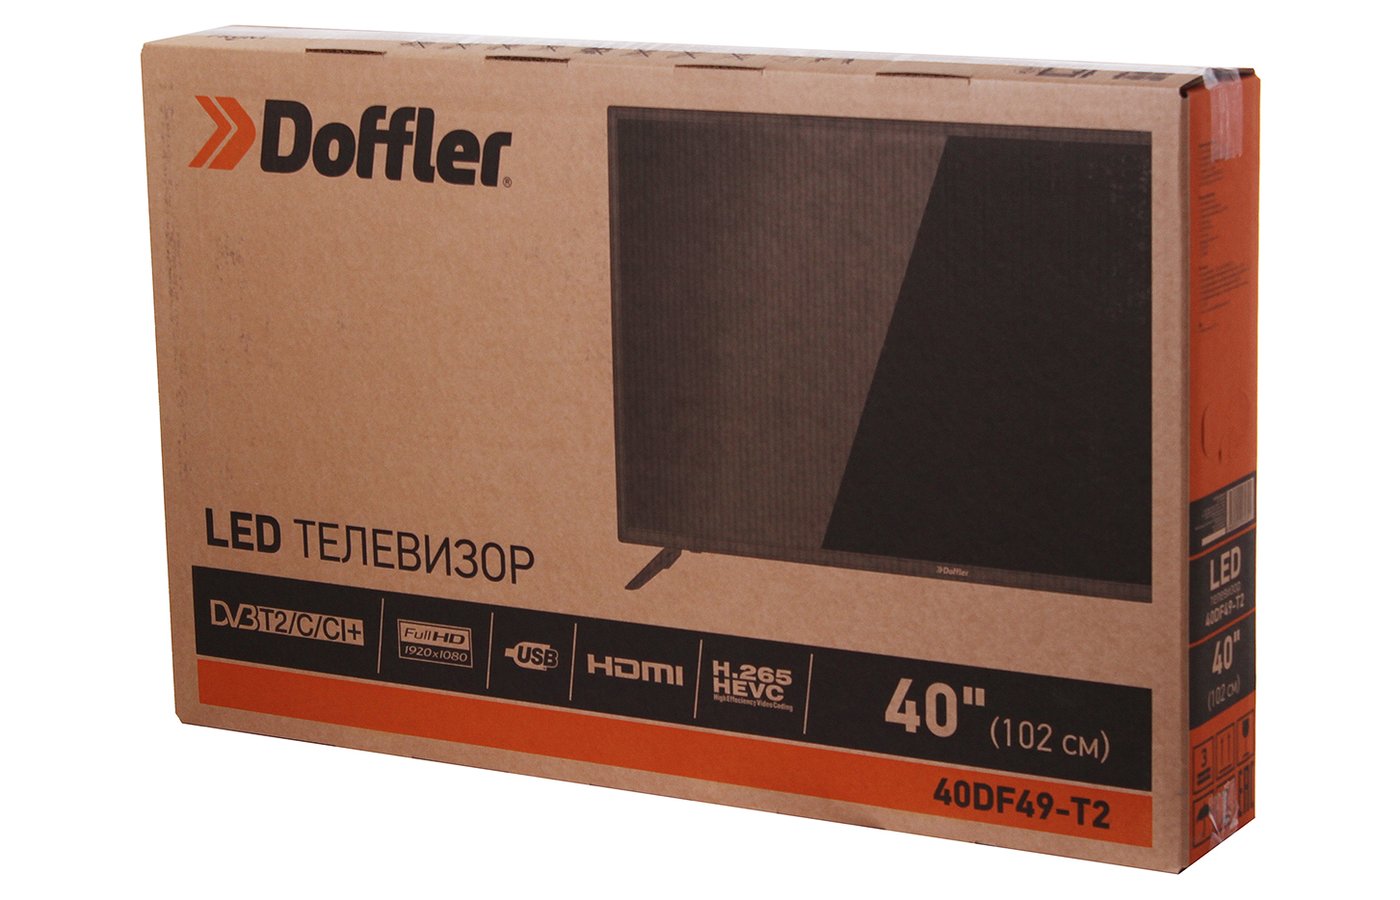 Купить телевизор doffler. Doffler 32eh46. Doffler 32dh49-t2. Телевизор Doffler 32eh46. Телевизор Doffler 32dh49-t2 плата передней панели.